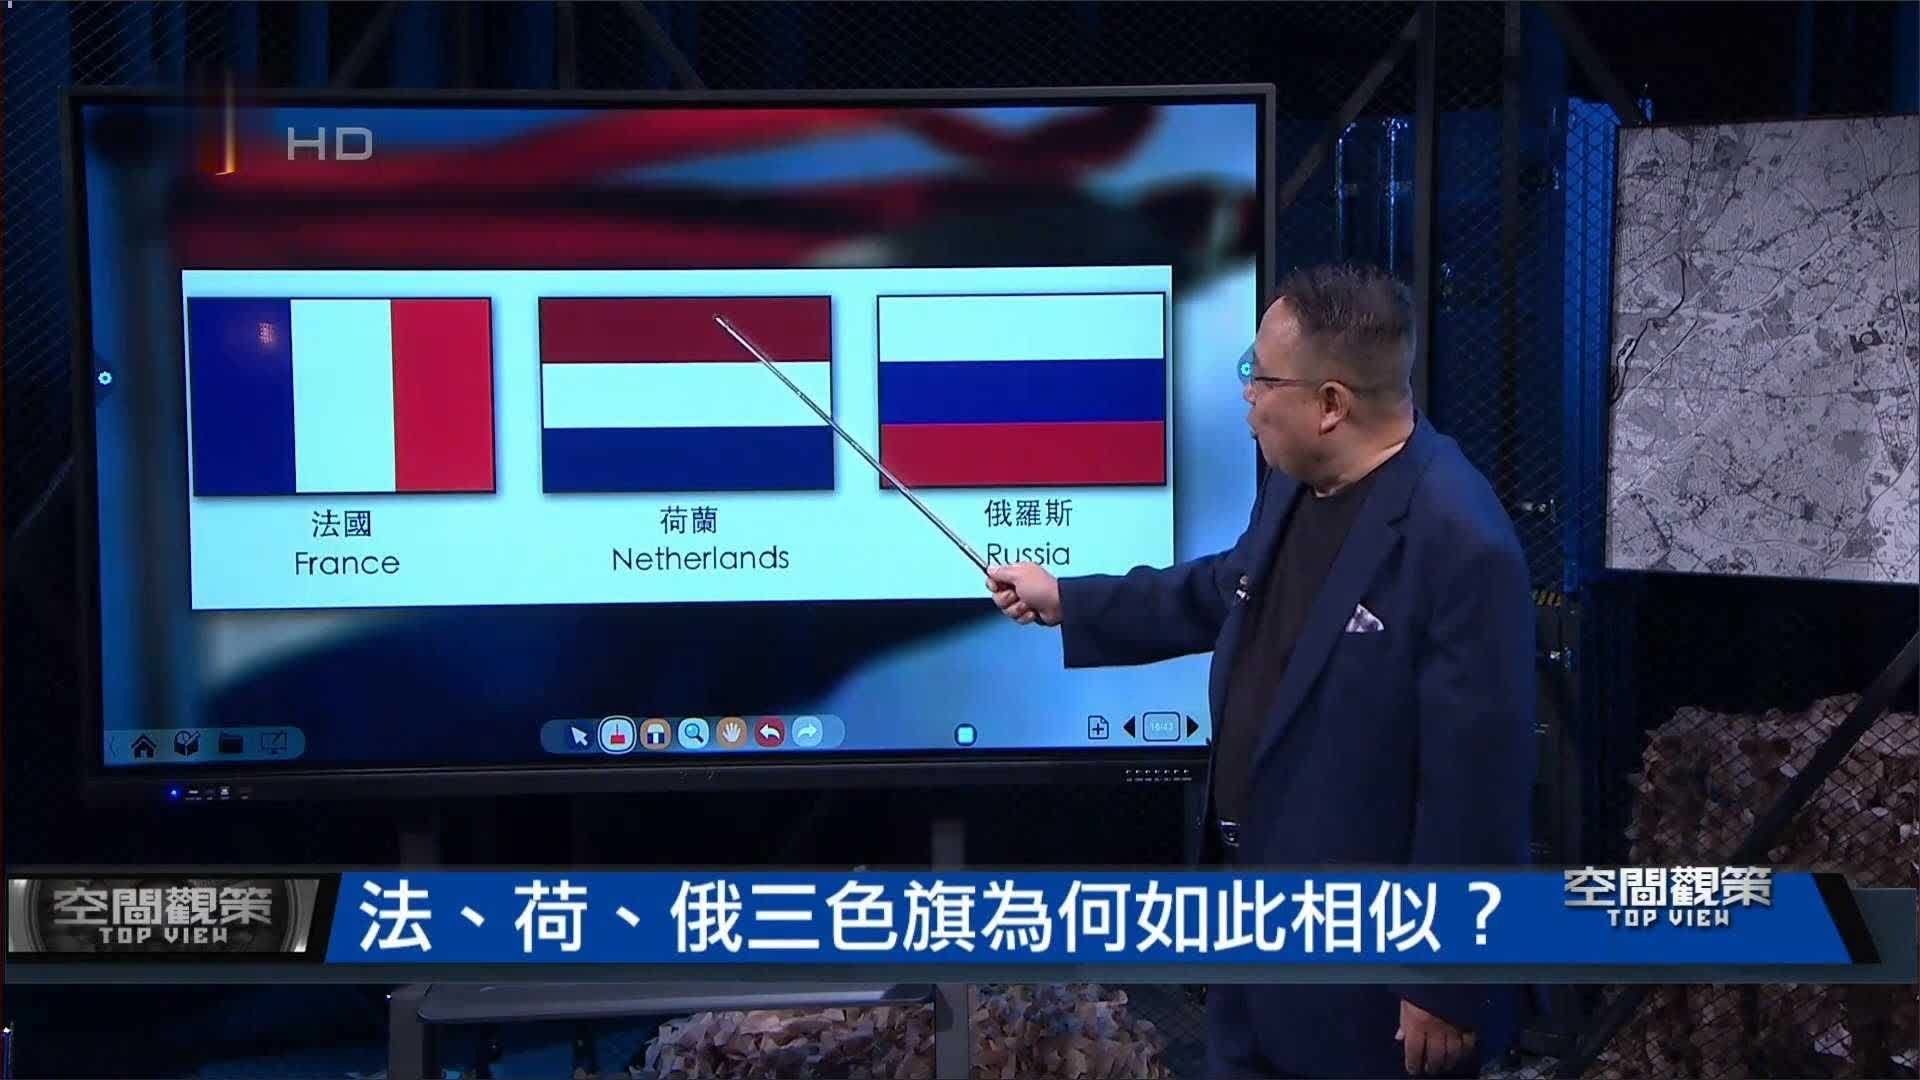 法国 荷兰 俄罗斯三色旗为何如此相似？李炜揭秘